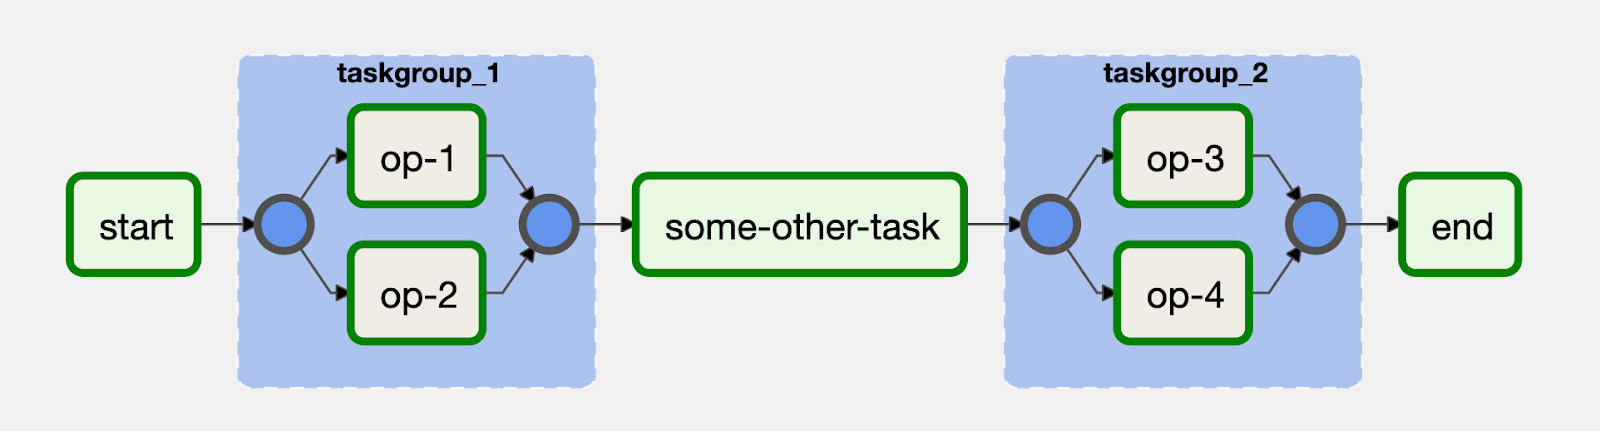 Aufgaben können in der Benutzeroberfläche mit dem TaskGroup-Operator in Airflow 2 visuell gruppiert werden.